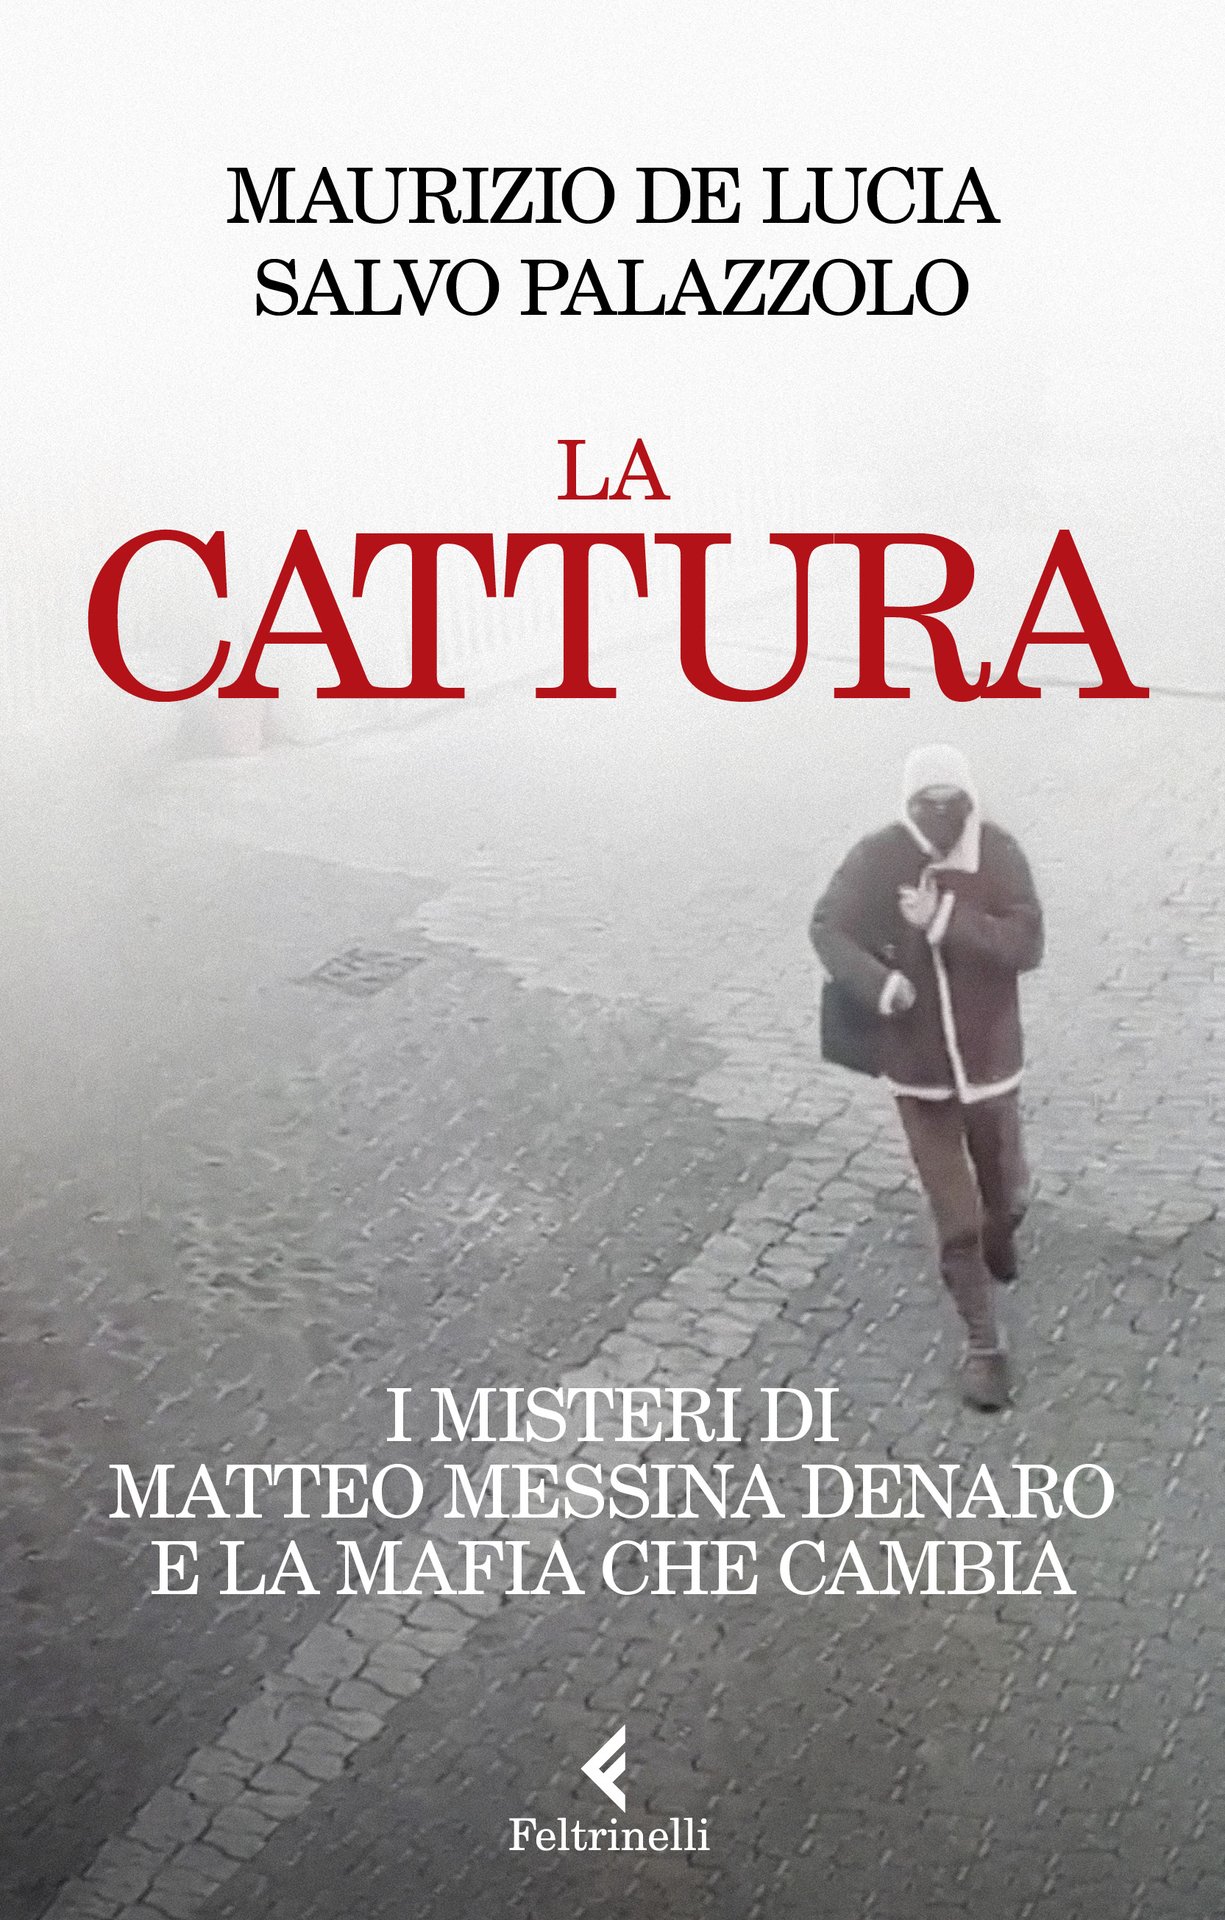 Matteo Messina Denaro, l'ultimo stragista di Cosa Nostra